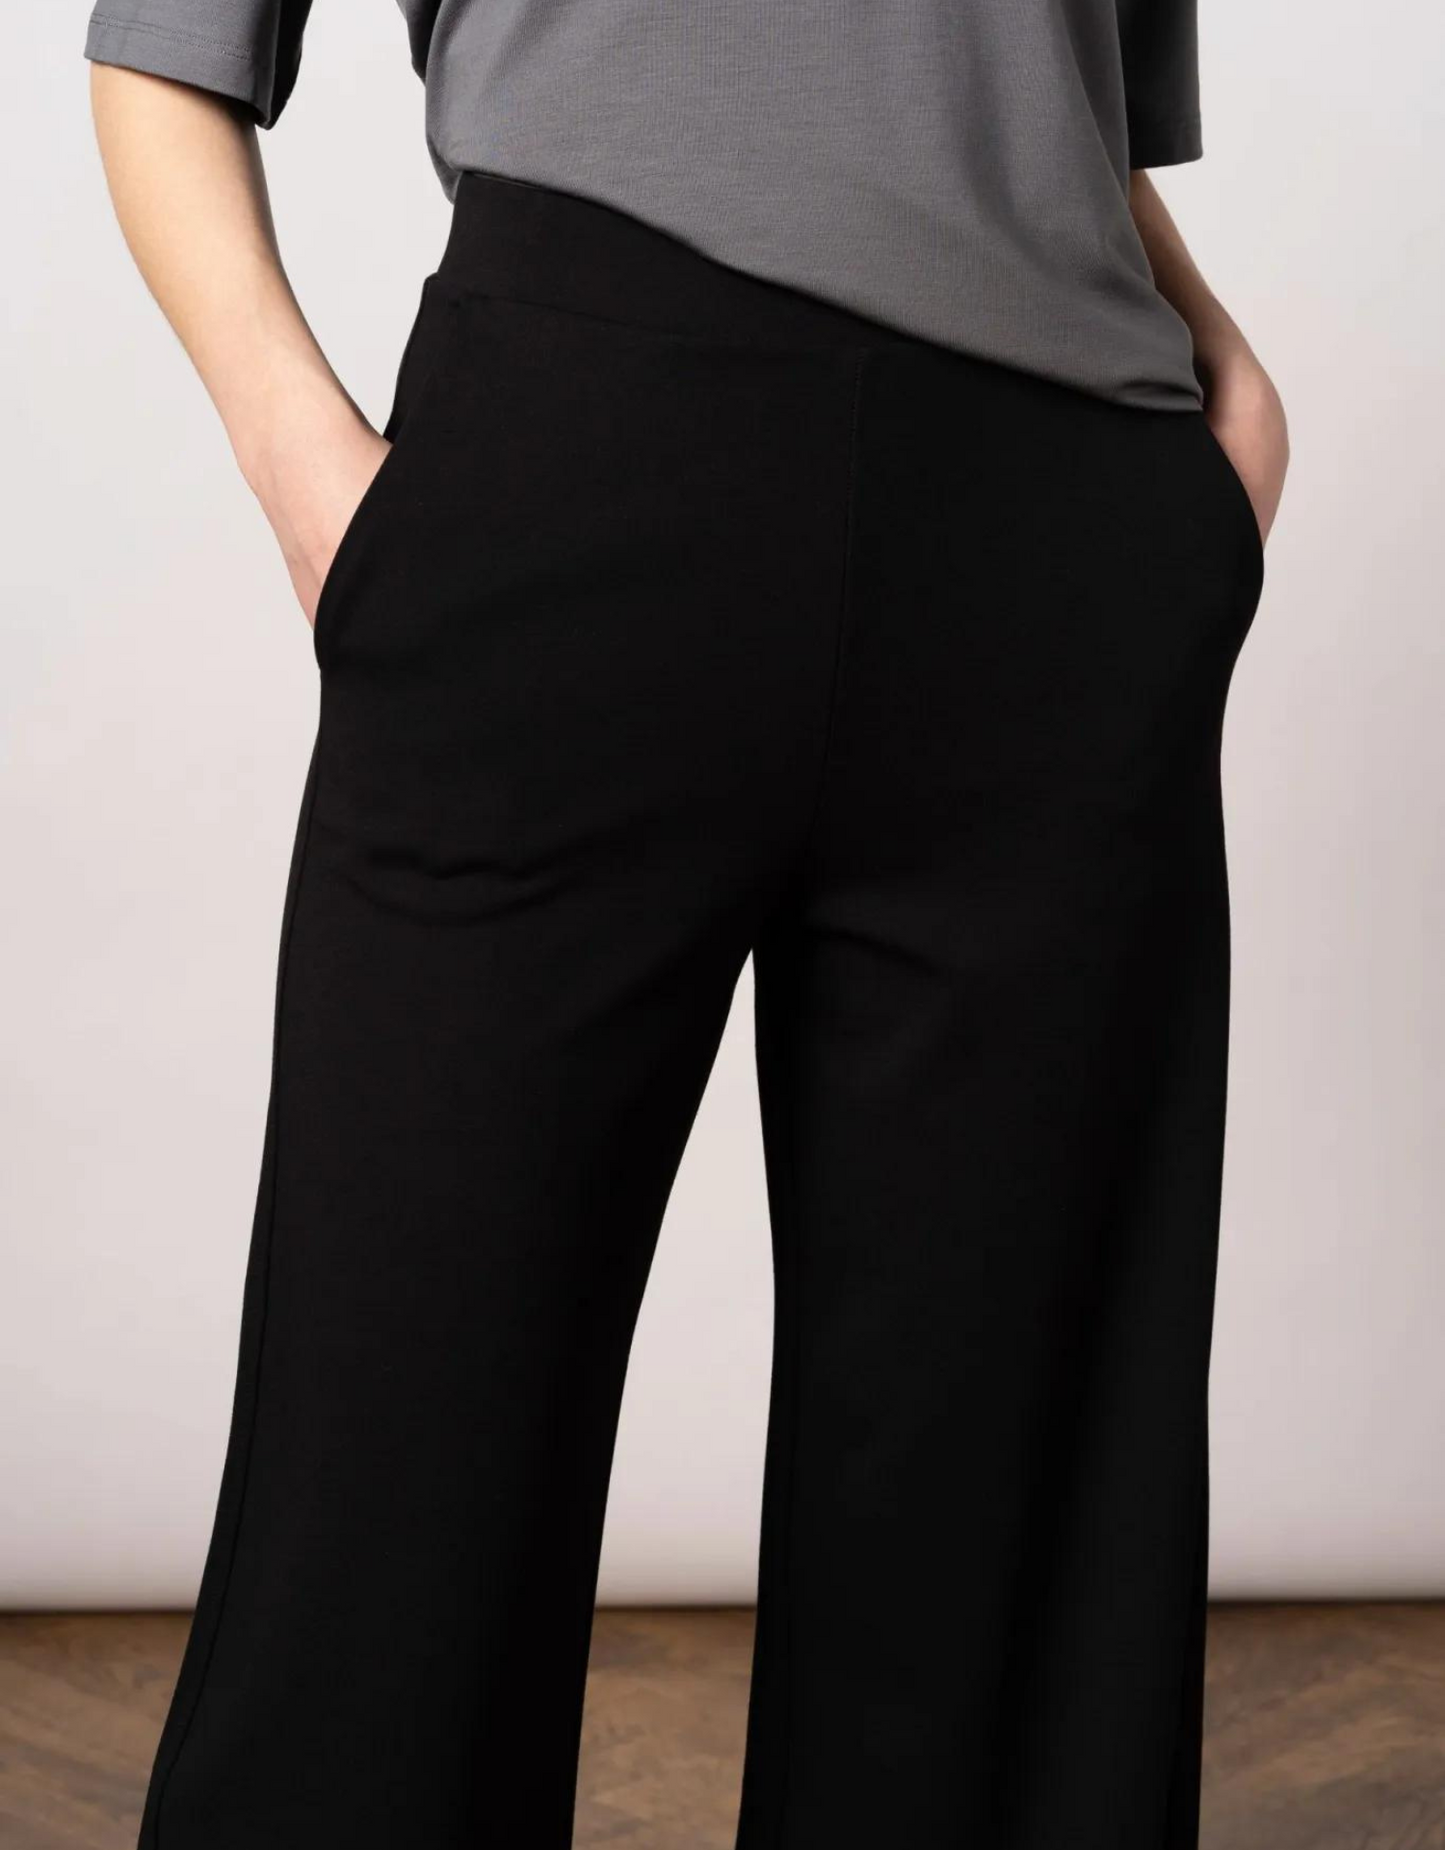 מכנסיים בגזרה רחבה - אורך ארוך - שחור